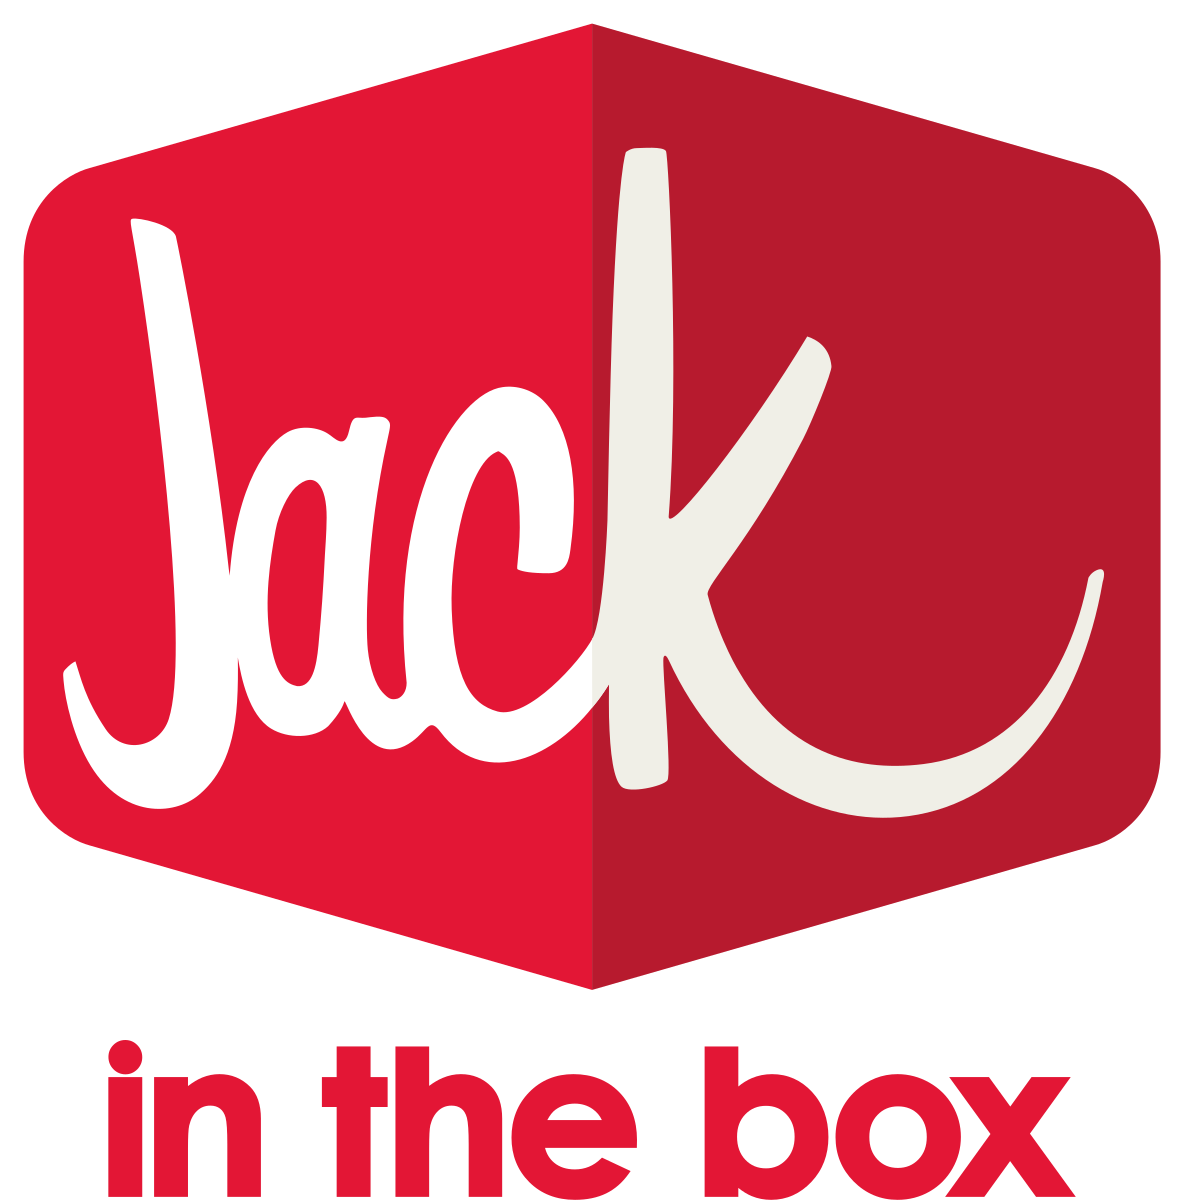 Jack in the Box logo